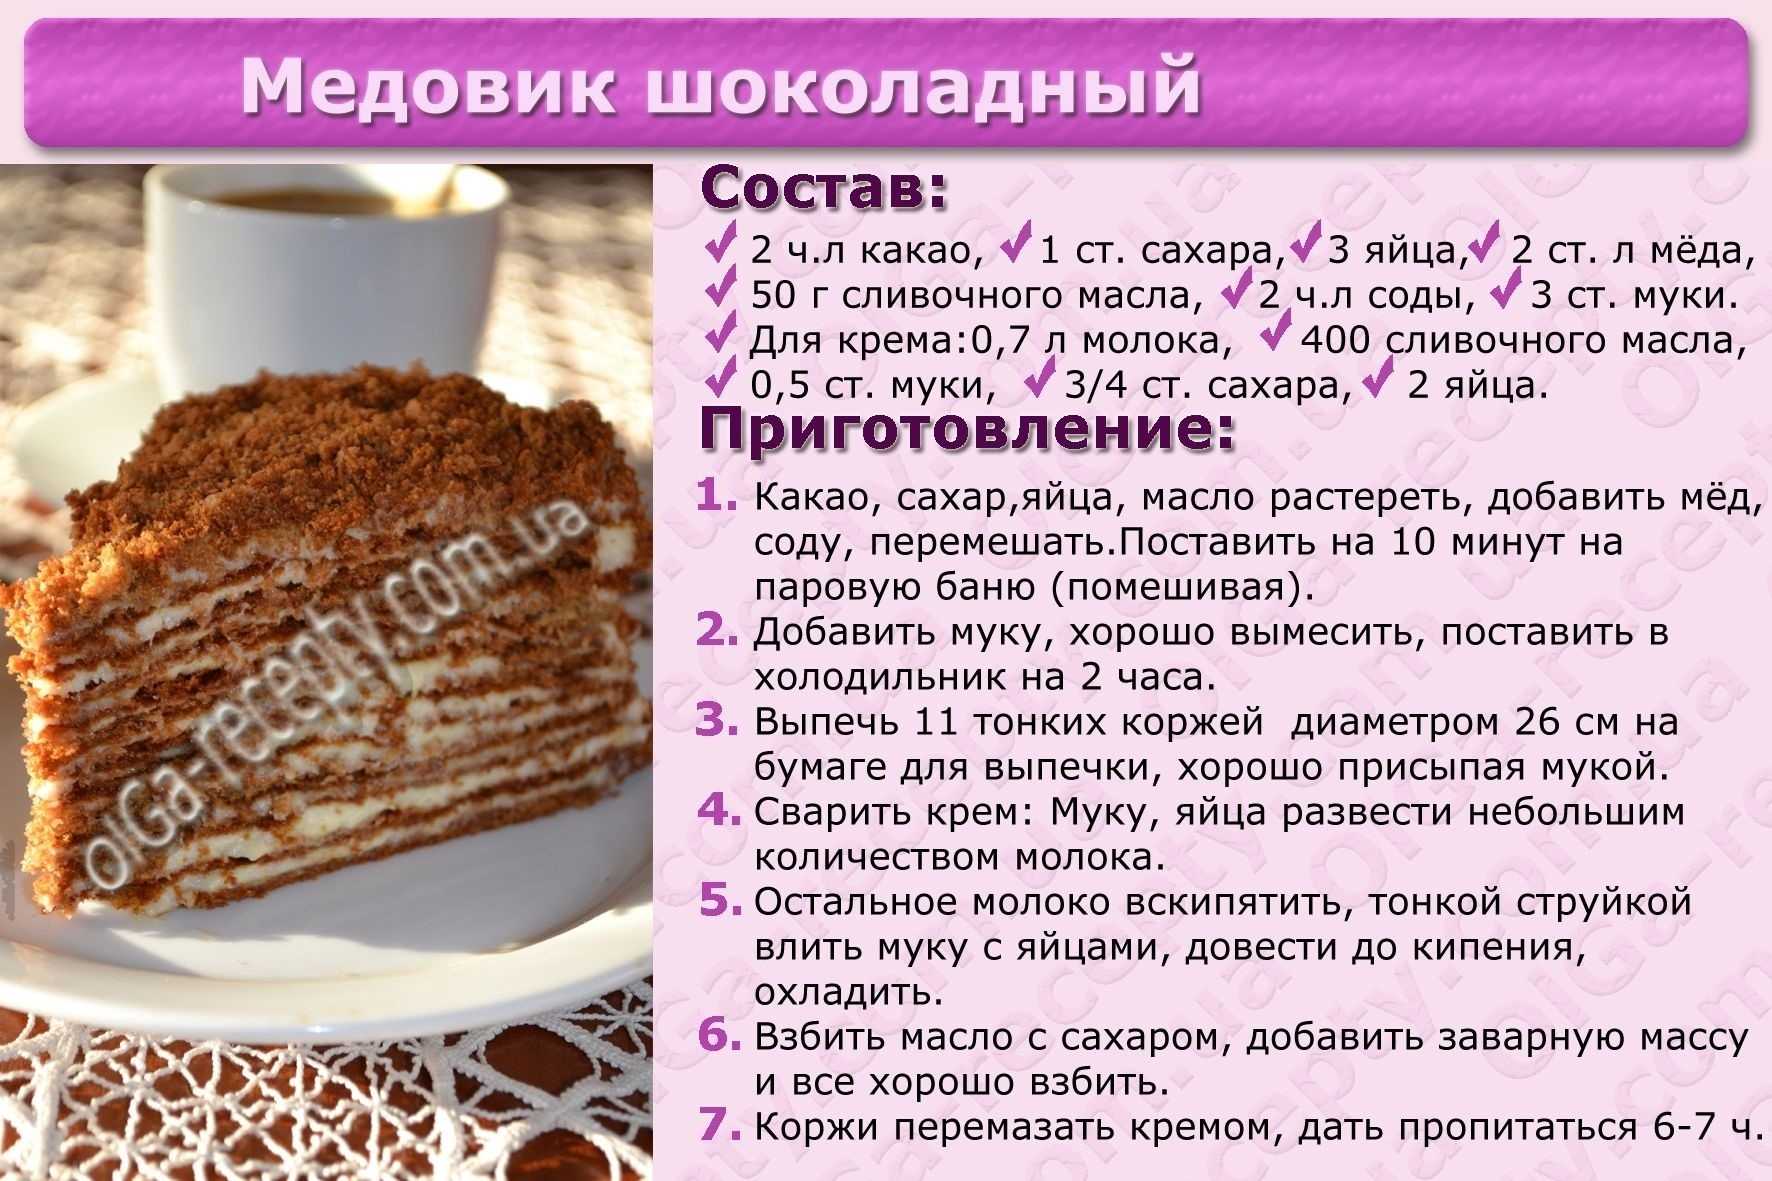 Рецепты торта ру. Картинки с рецептами тортов. Рецепты тортов с описанием. Несложные рецепты тортов с картинкой. Приготовление торта картинки.